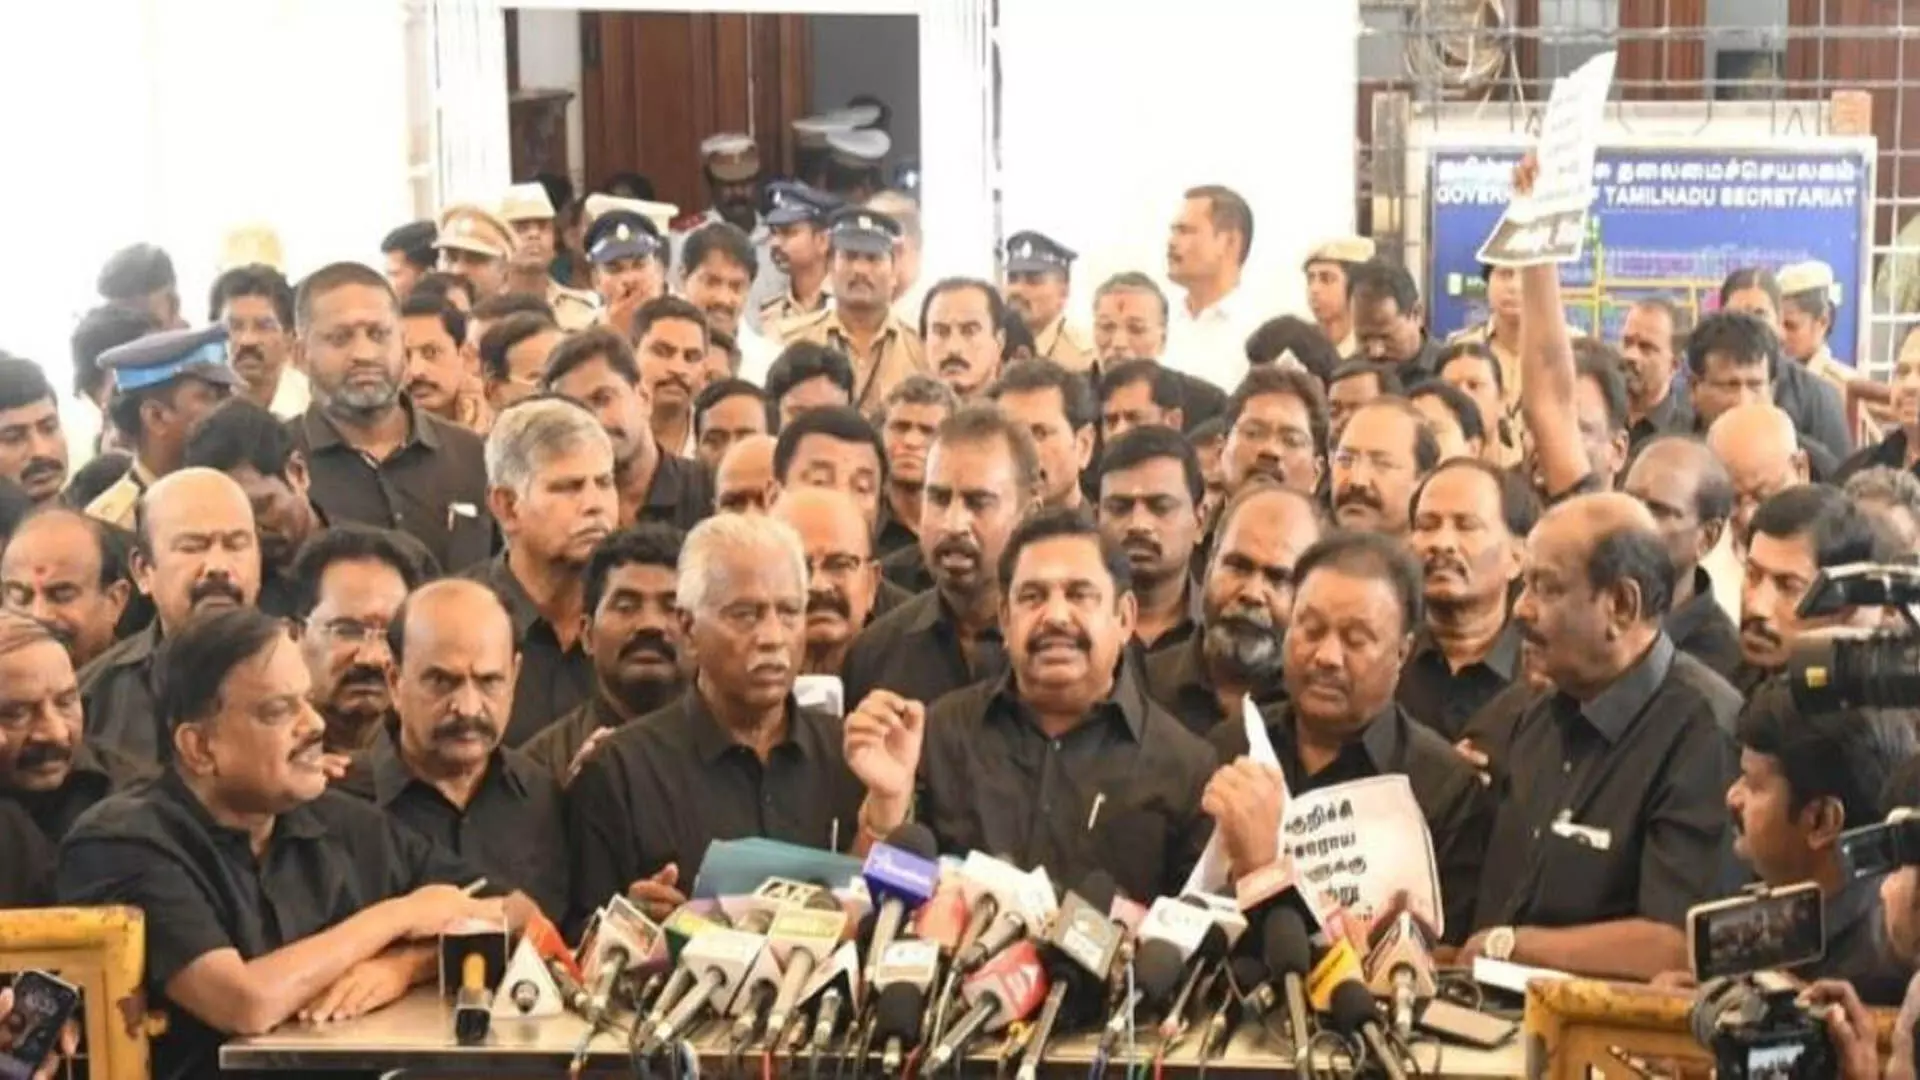 Tamil Nadu News : तमिलनाडु विधानसभा से AIADMK विधायक निलंबित